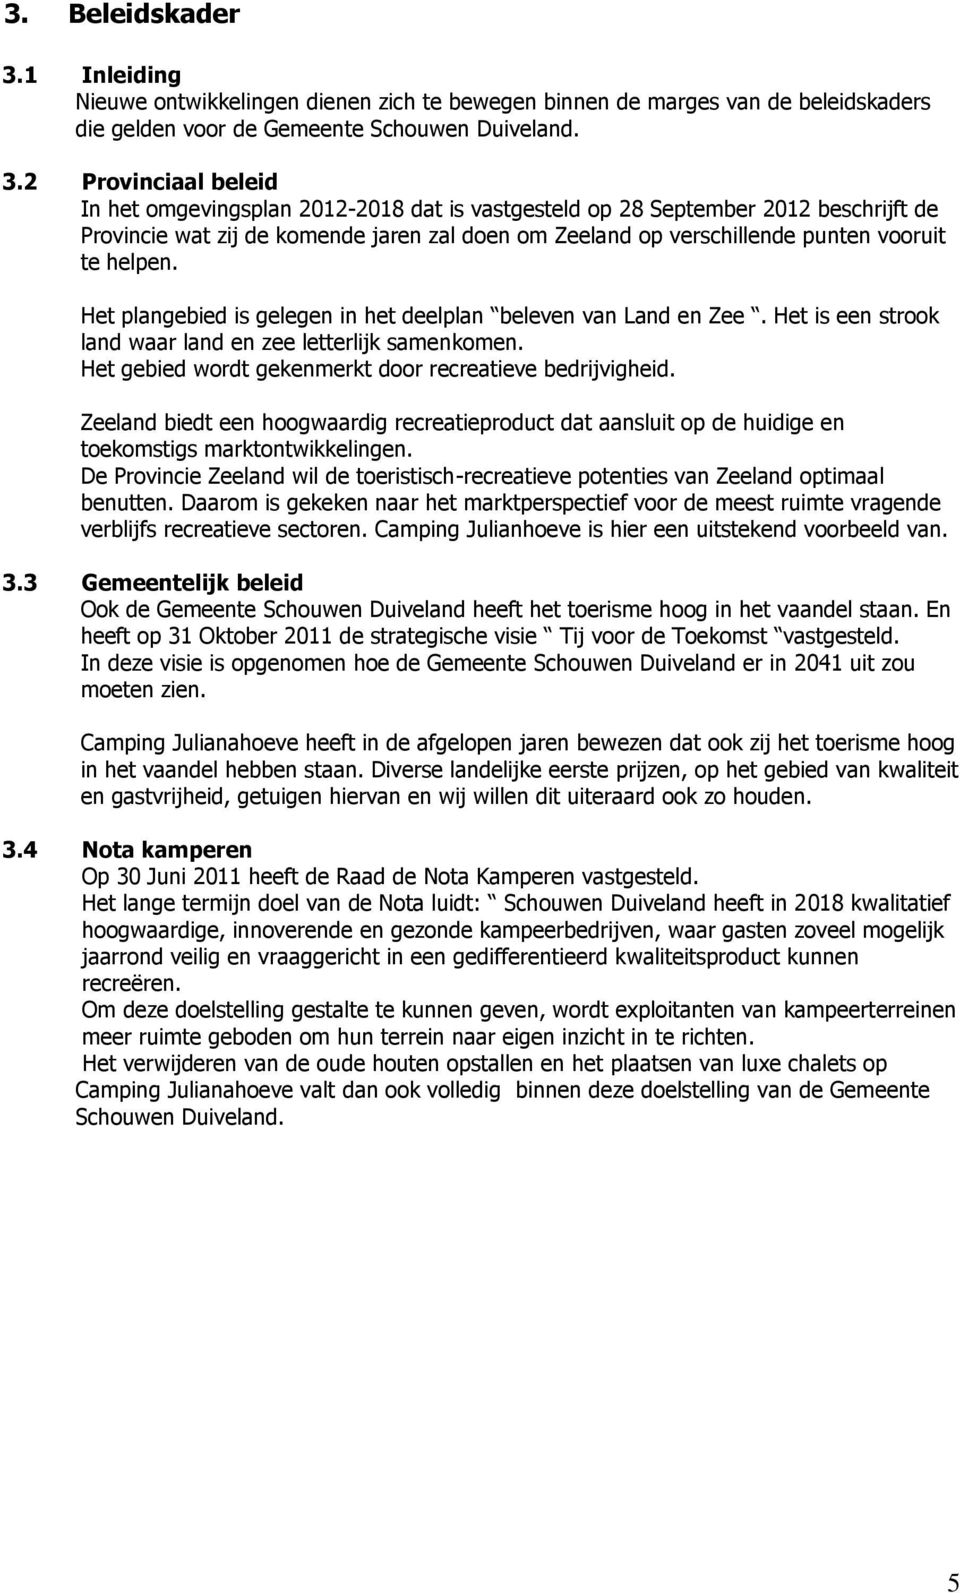 2 Provinciaal beleid In het omgevingsplan 2012-2018 dat is vastgesteld op 28 September 2012 beschrijft de Provincie wat zij de komende jaren zal doen om Zeeland op verschillende punten vooruit te